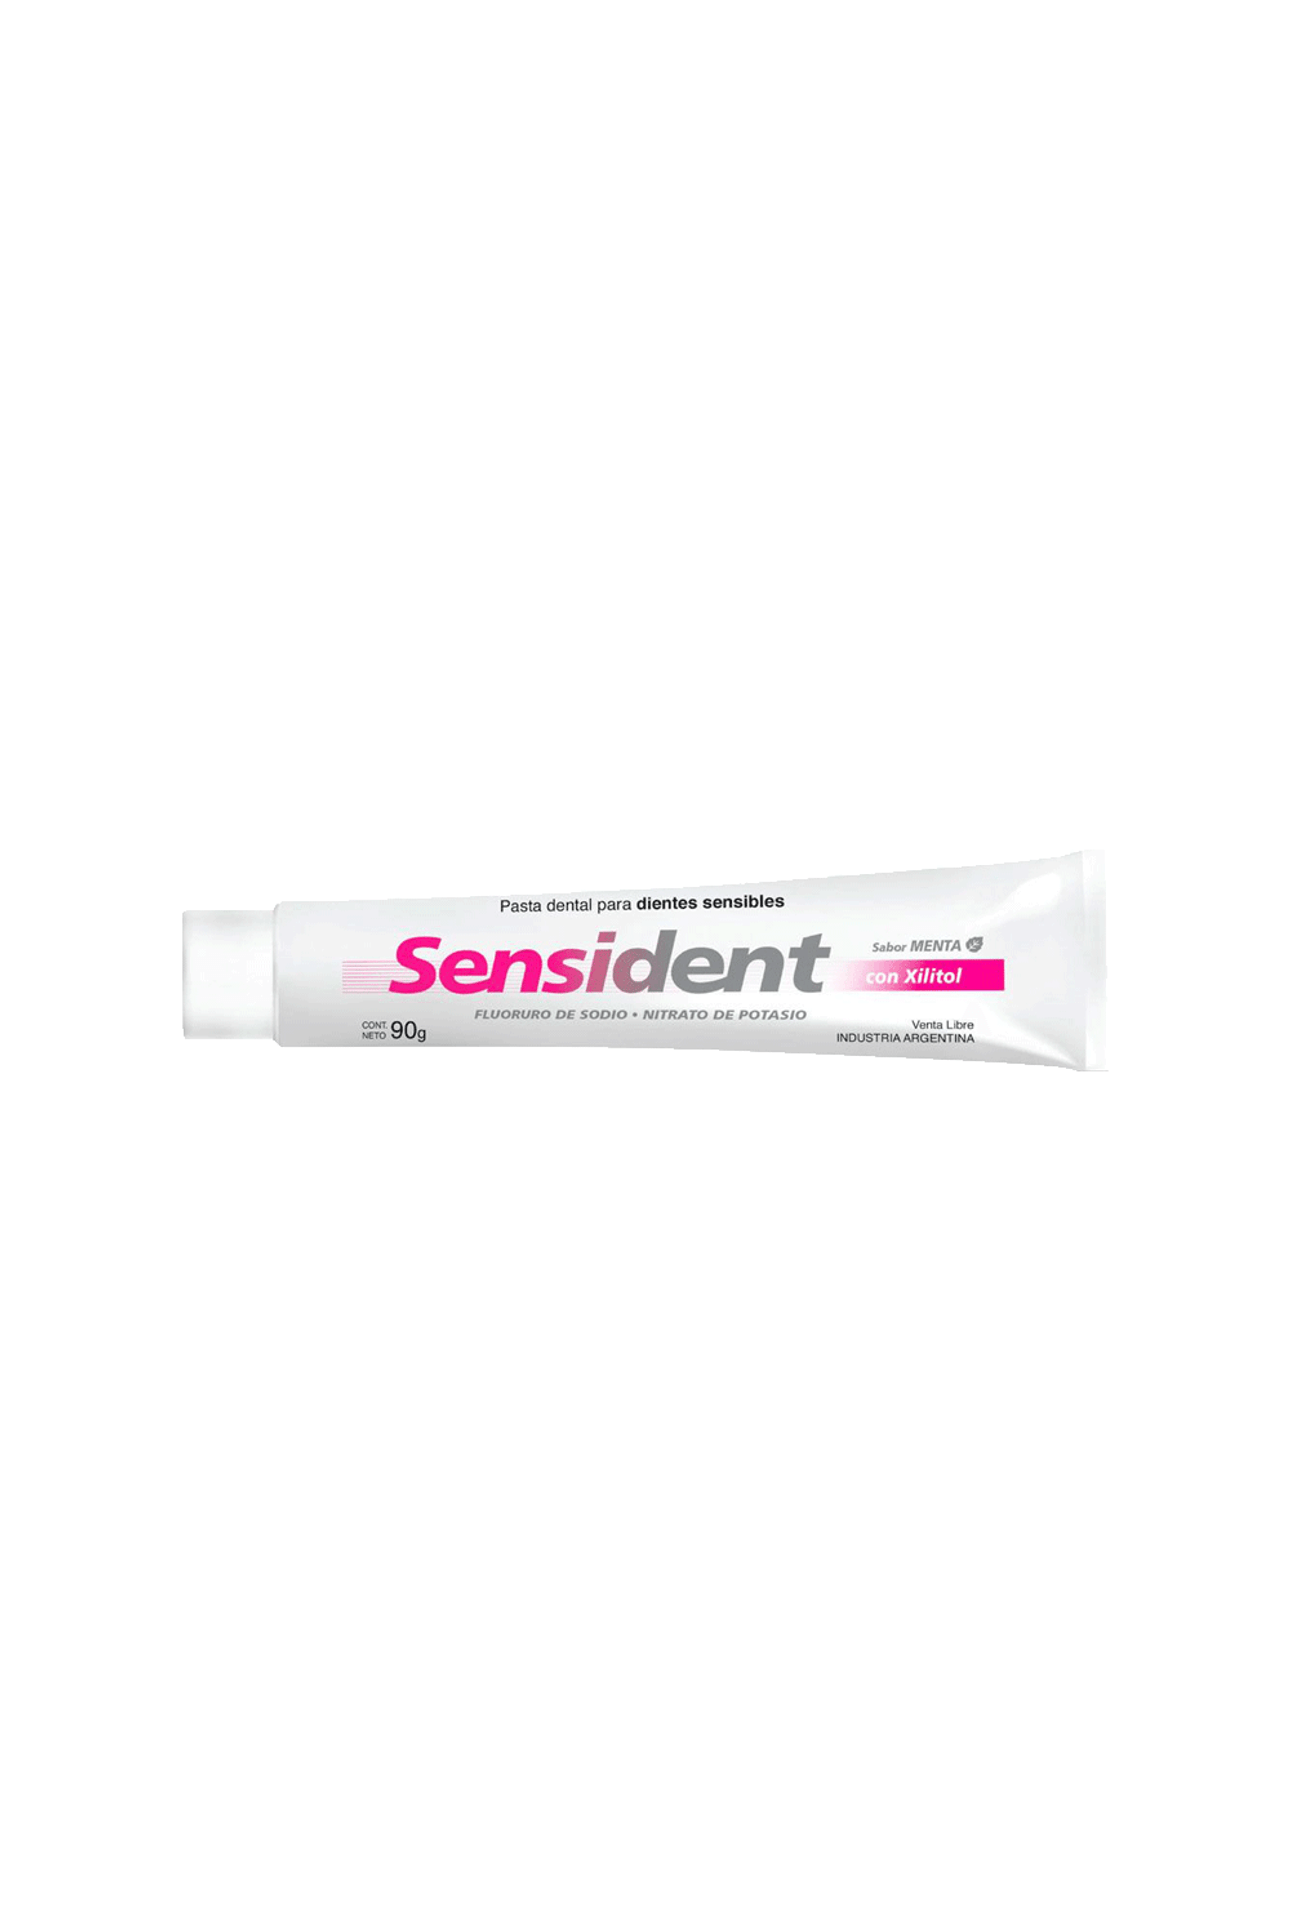 Sensident-Pasta-Dental-Sensident-x-90g-7792175008471_img1